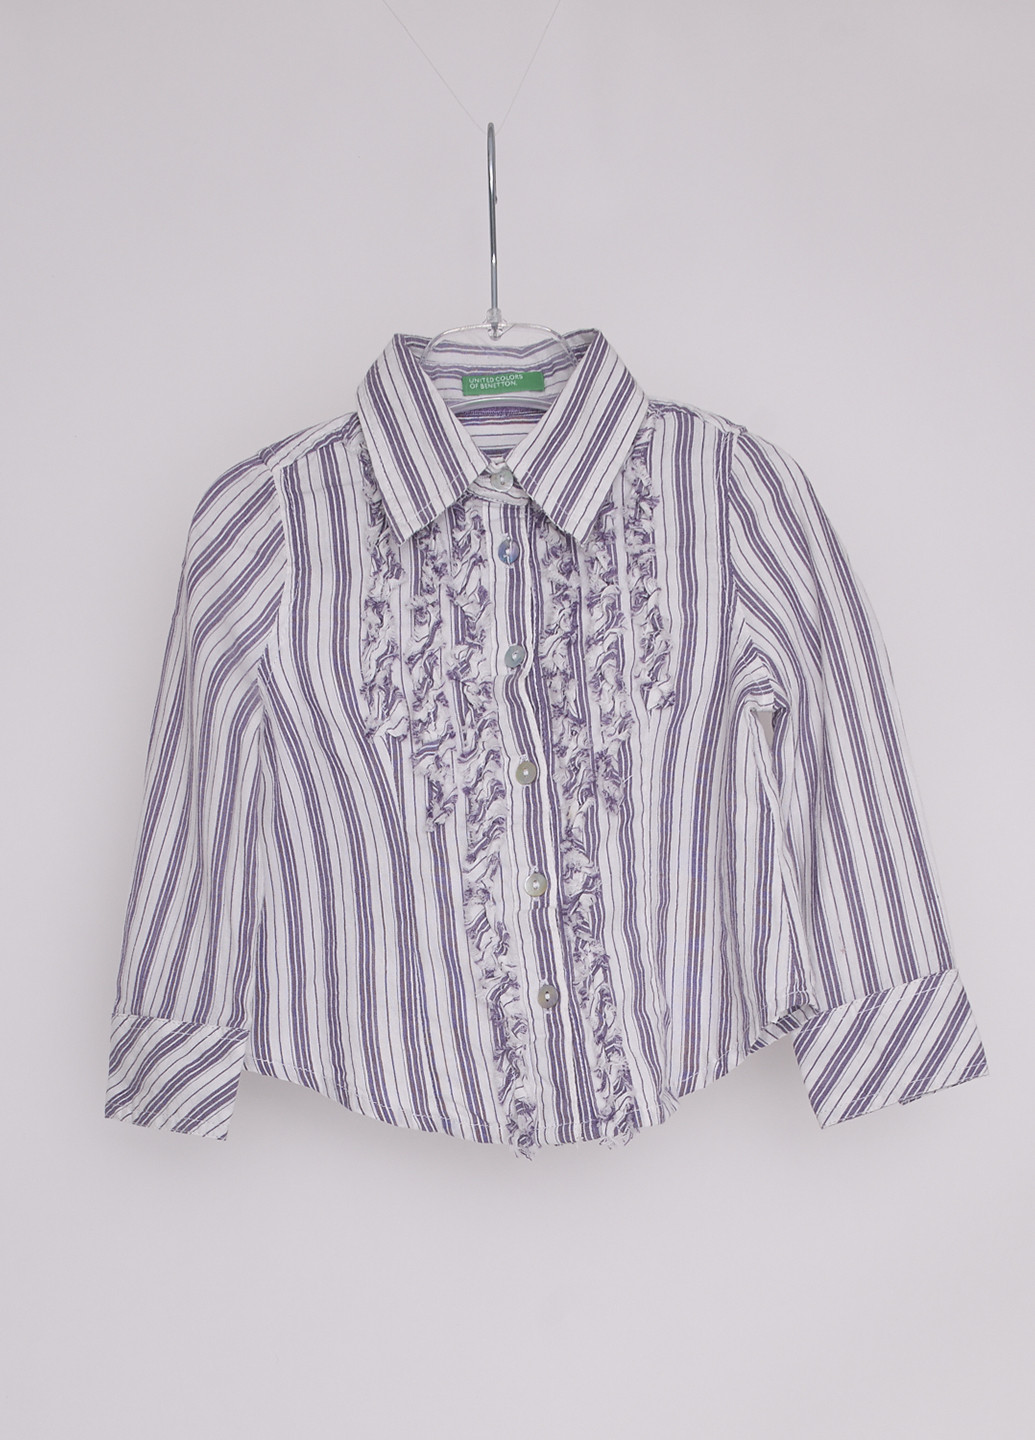 Комбинированная в полоску блузка United Colors of Benetton демисезонная